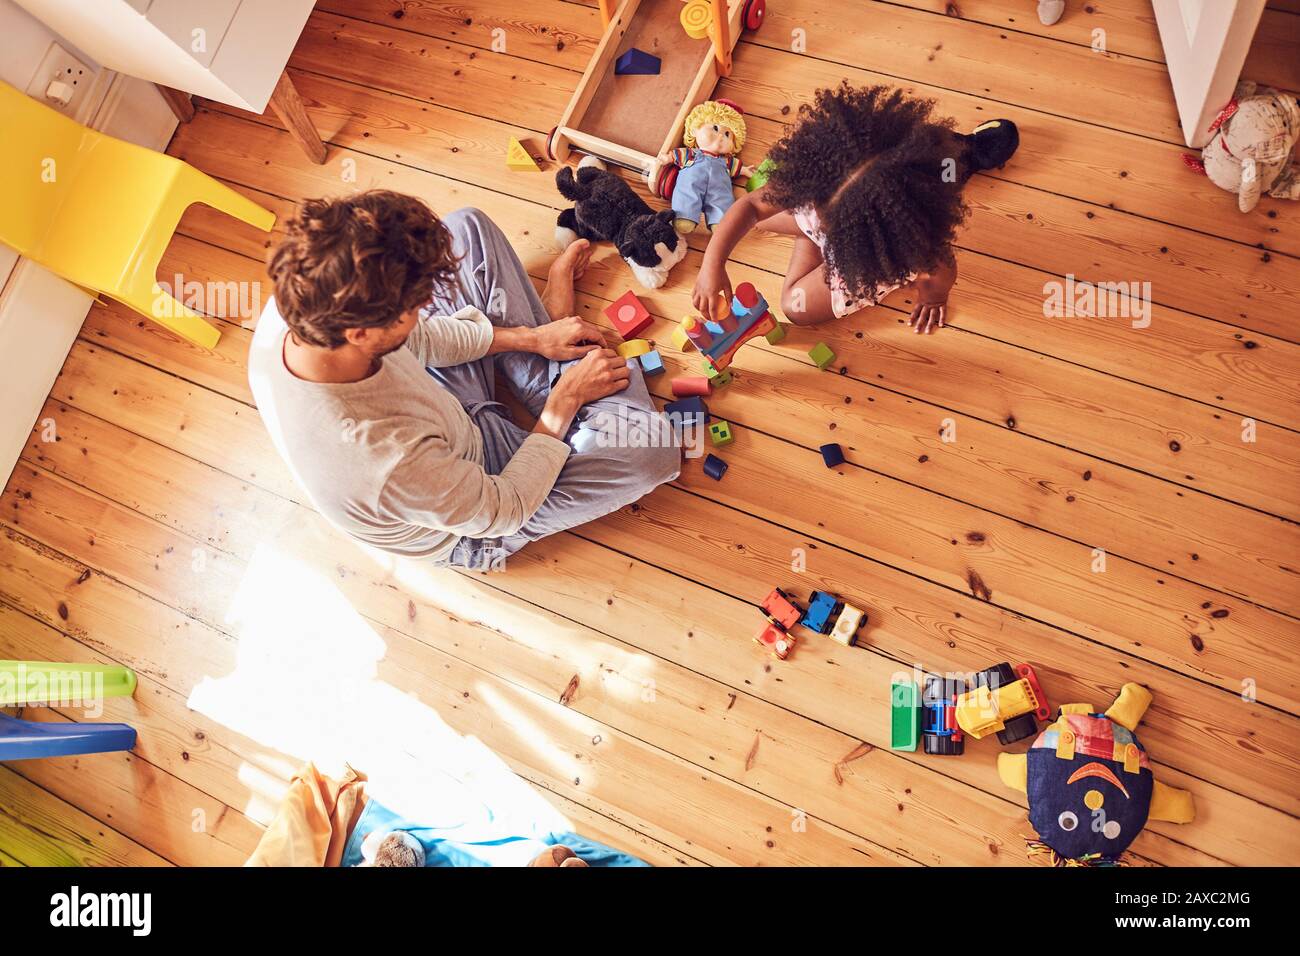 Père et fille jouant avec des blocs de bois Banque D'Images